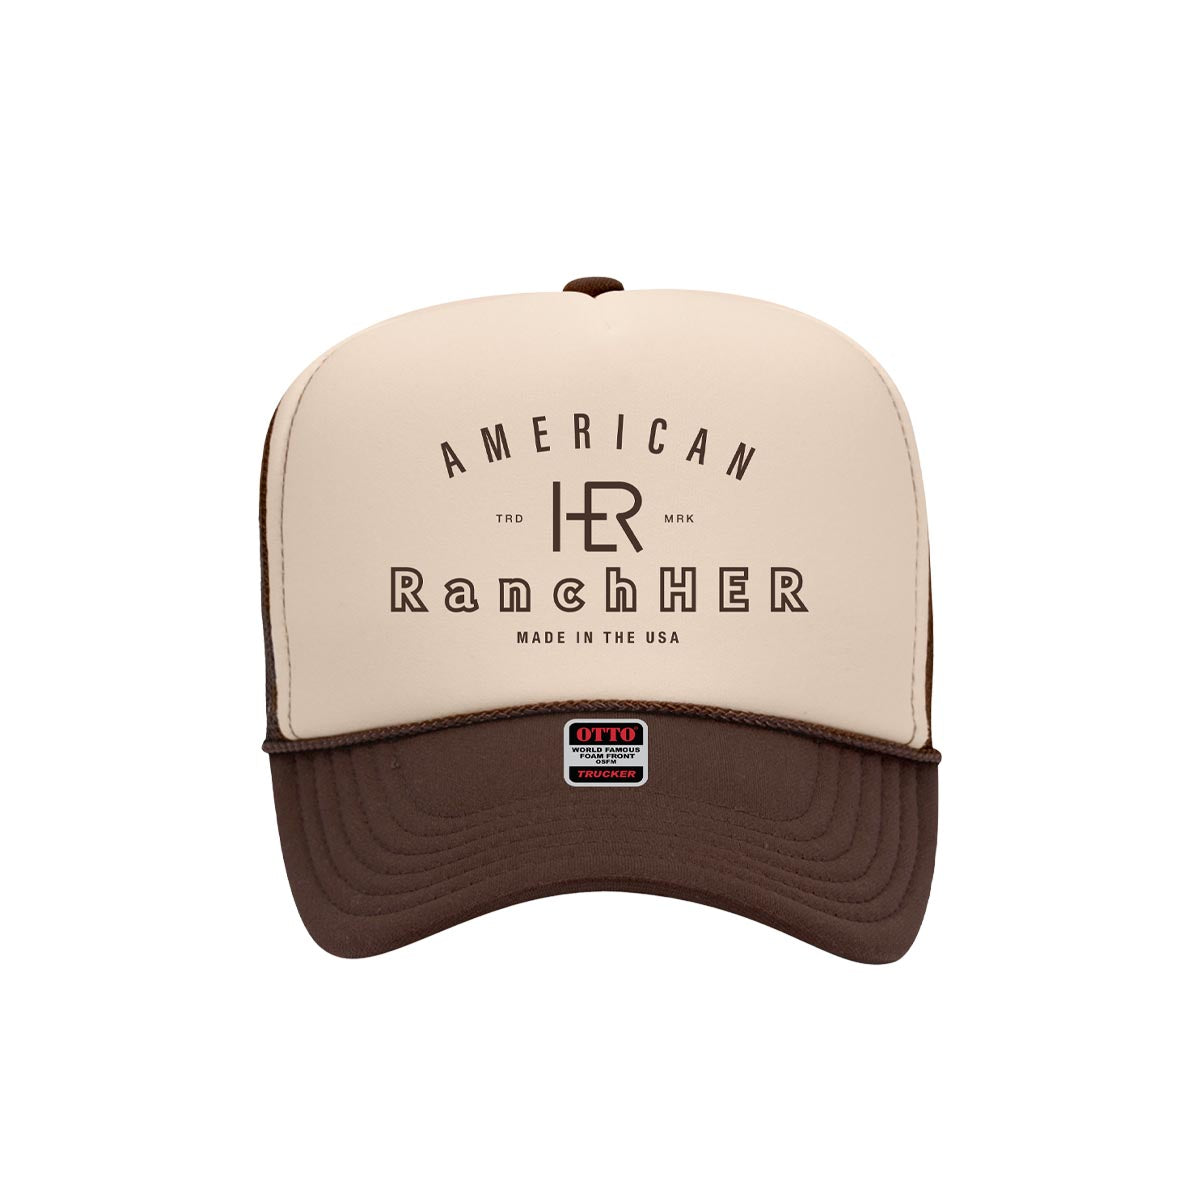 American RanchHER Foam Trucker Hat